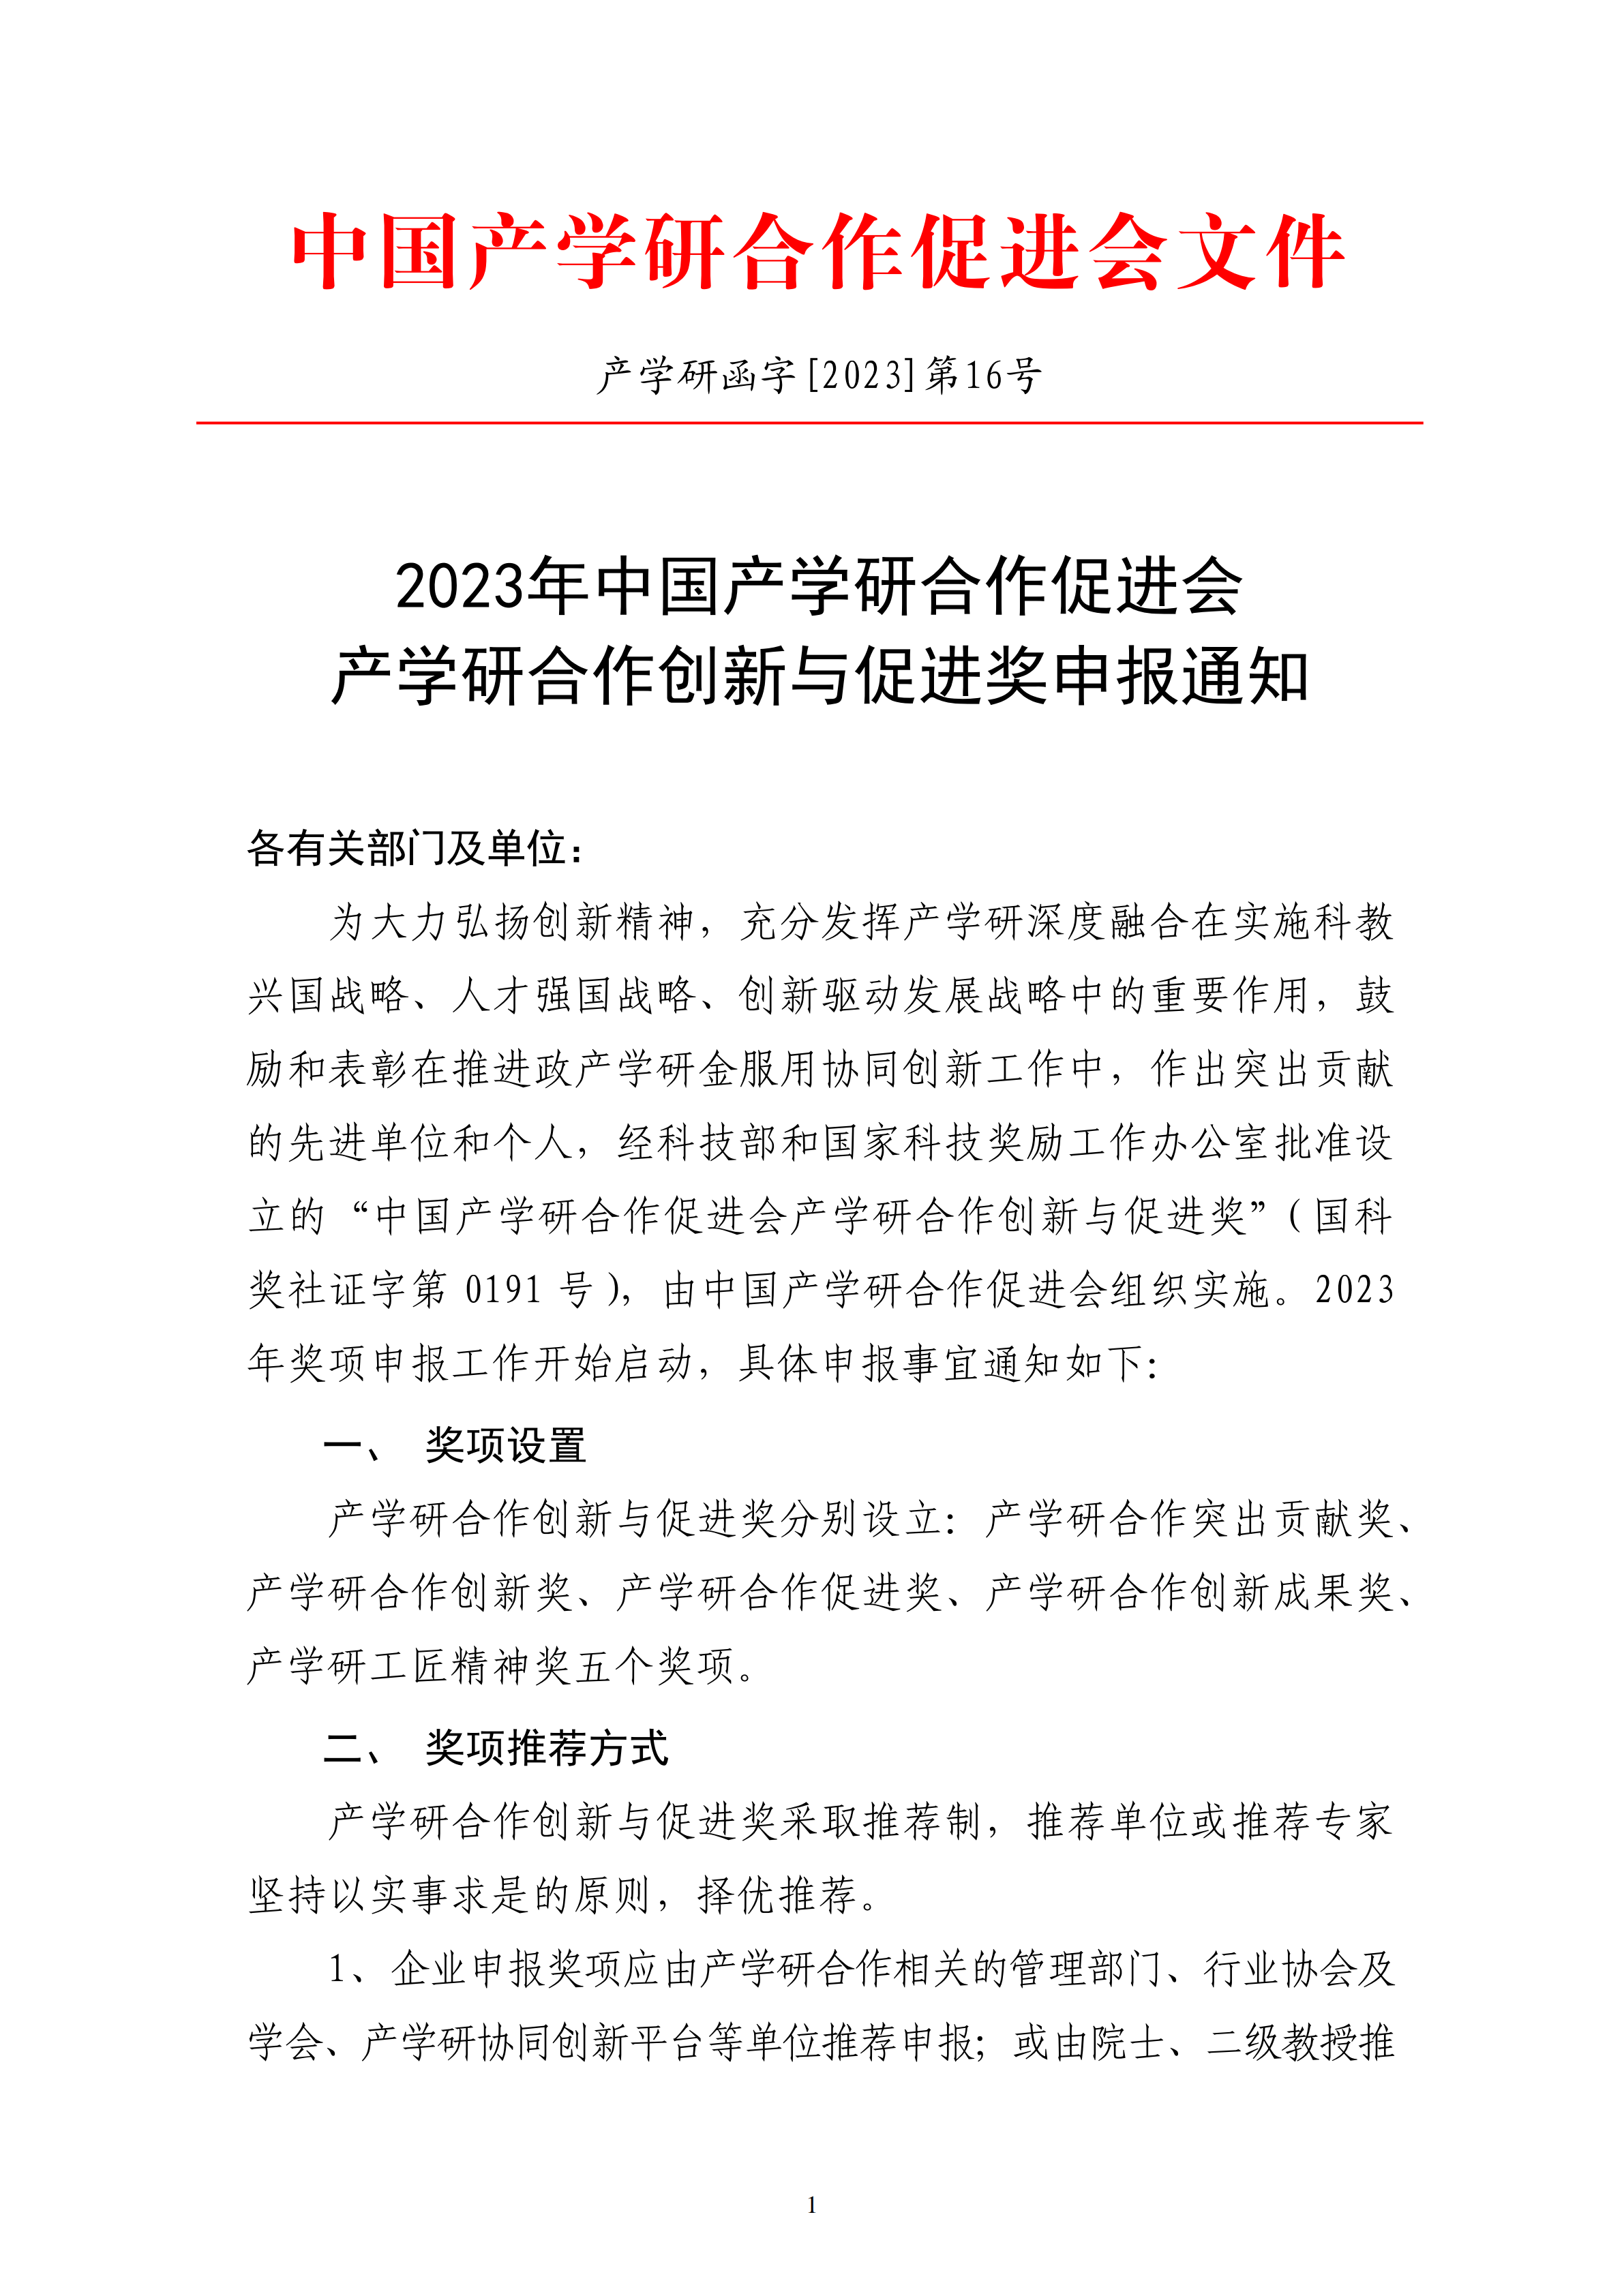 2023年中国产学研合作促进会产学研合作创新与促进奖申报通知_00.png